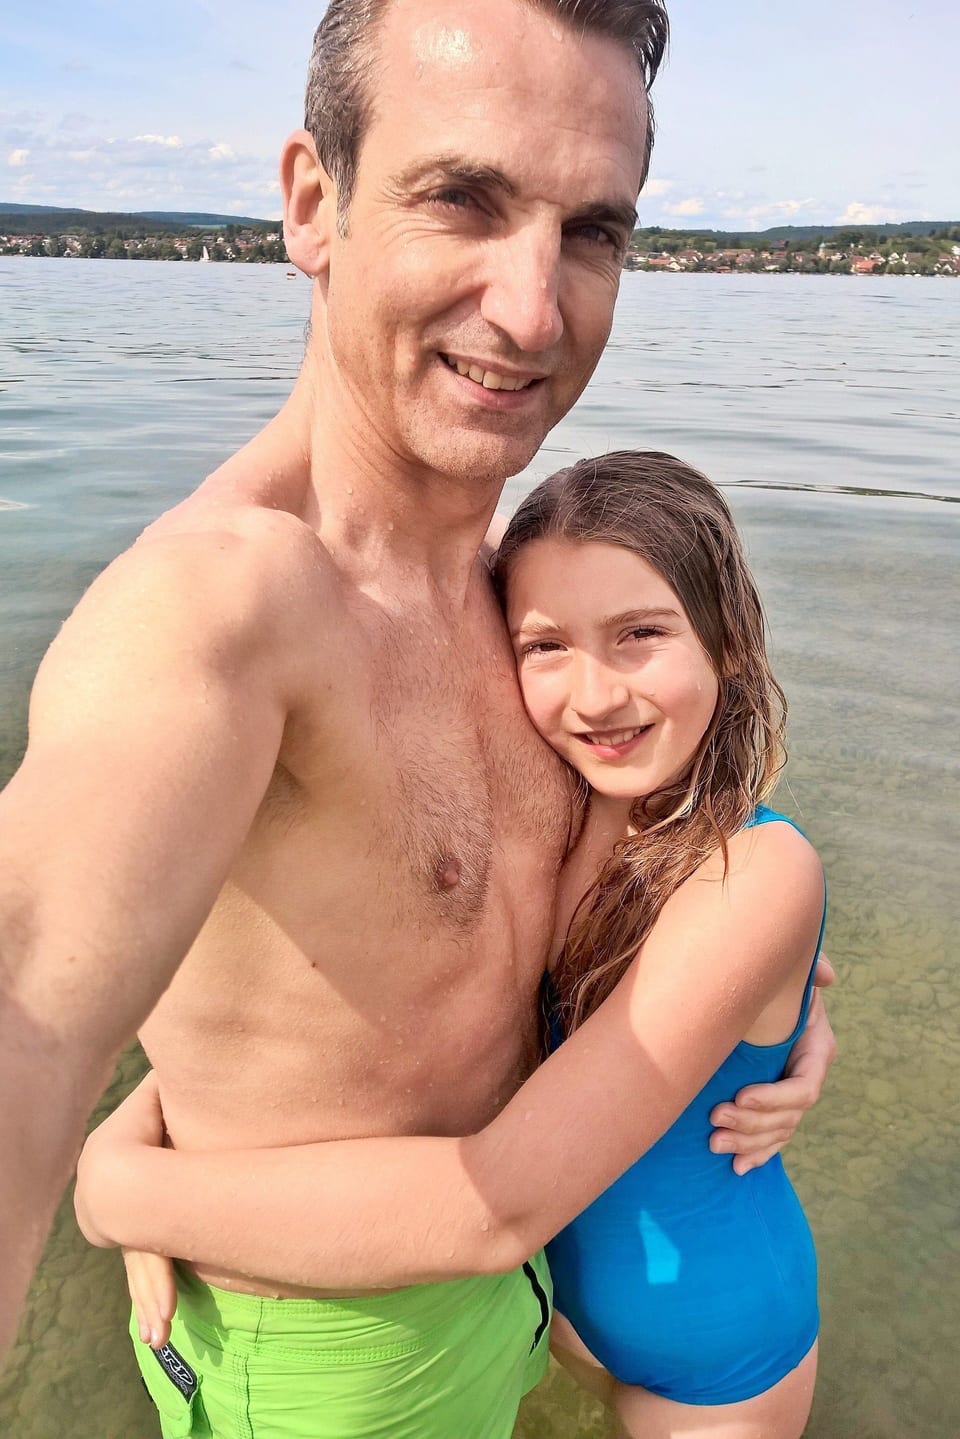 Vater und Tochter am Ufer eines Sees in Badehosen. Es scheint kalt zu sein.